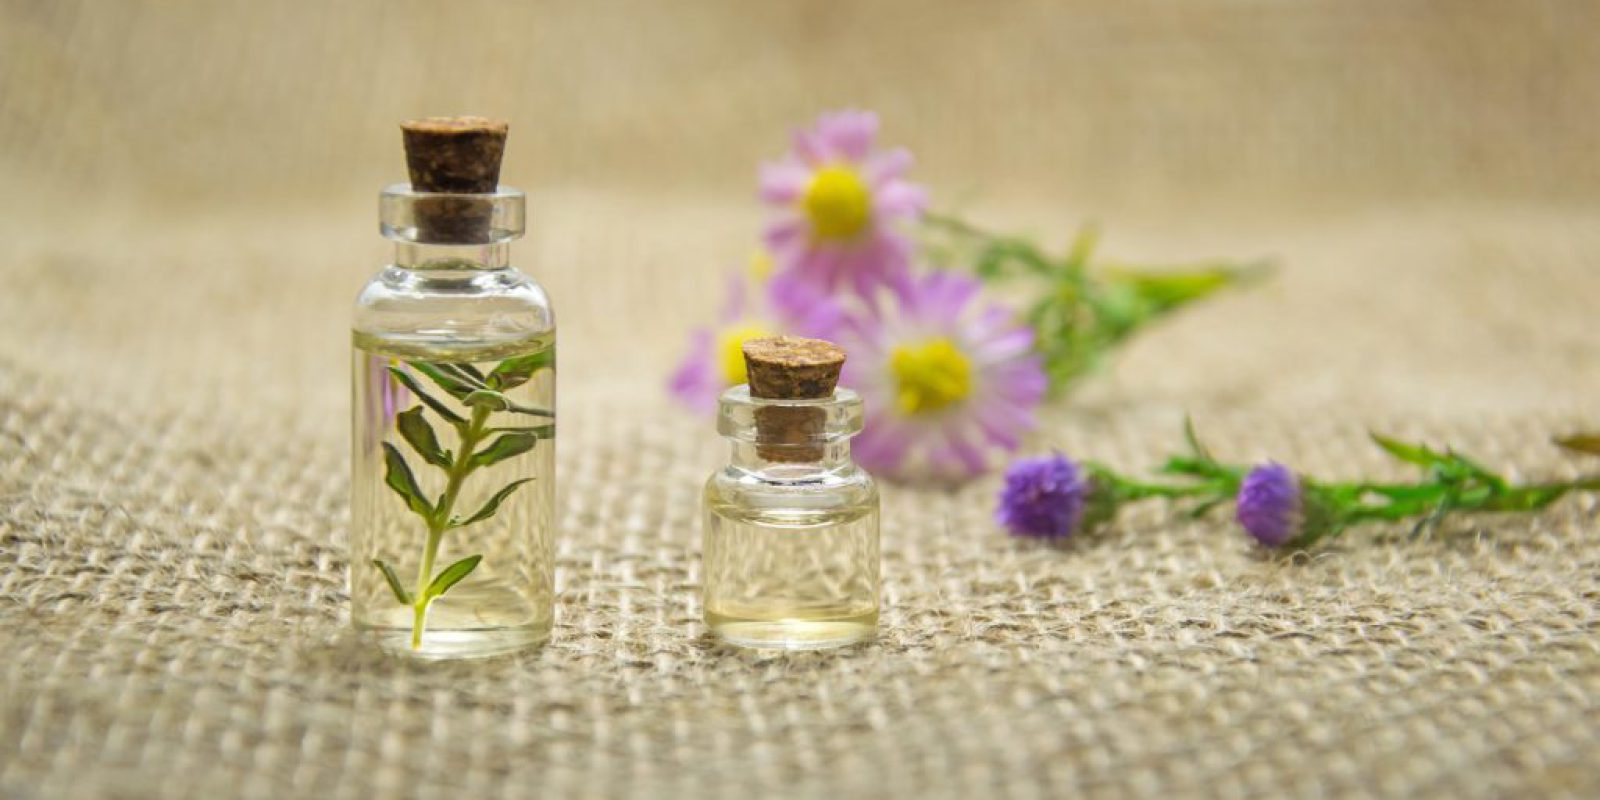 Wprowadzenie do świata wosków do kominka zapachowego: poradnik dla pasjonatów aromatów